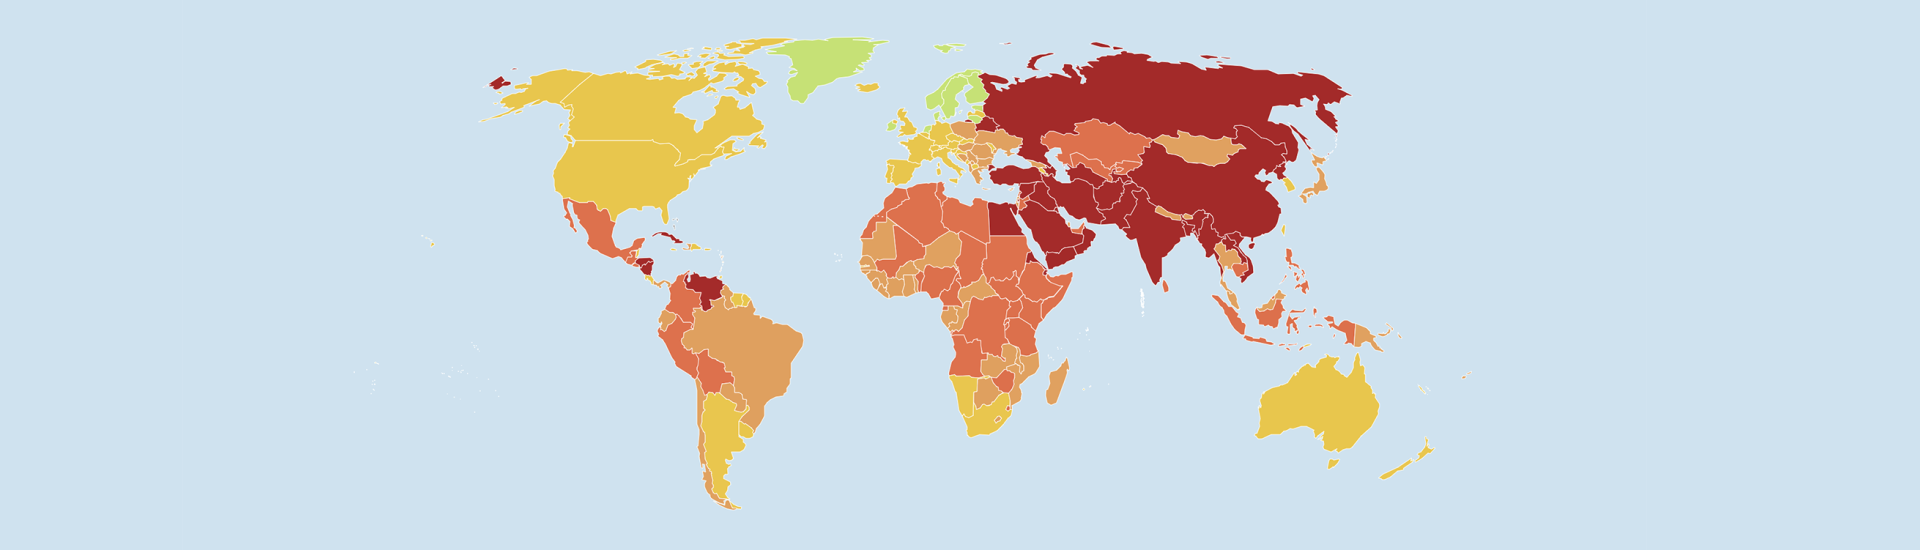 Kaart van de wereld met daarop aangegeven de mate van persvrijheid